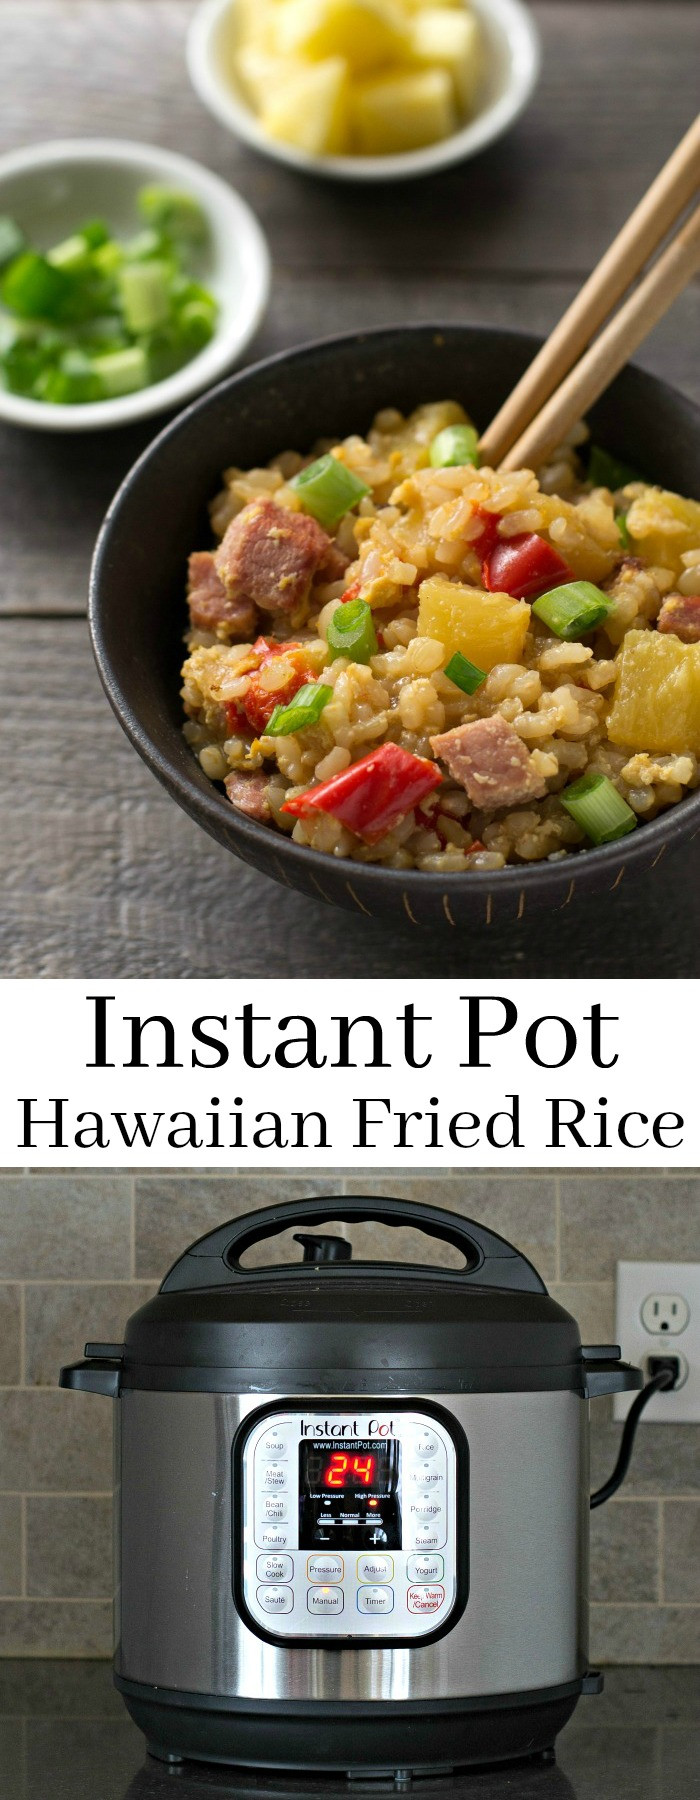 Instant Pot Recipes Hawaii
 Instant Pot Hawaiian Fried Rice Real Food Real Deals